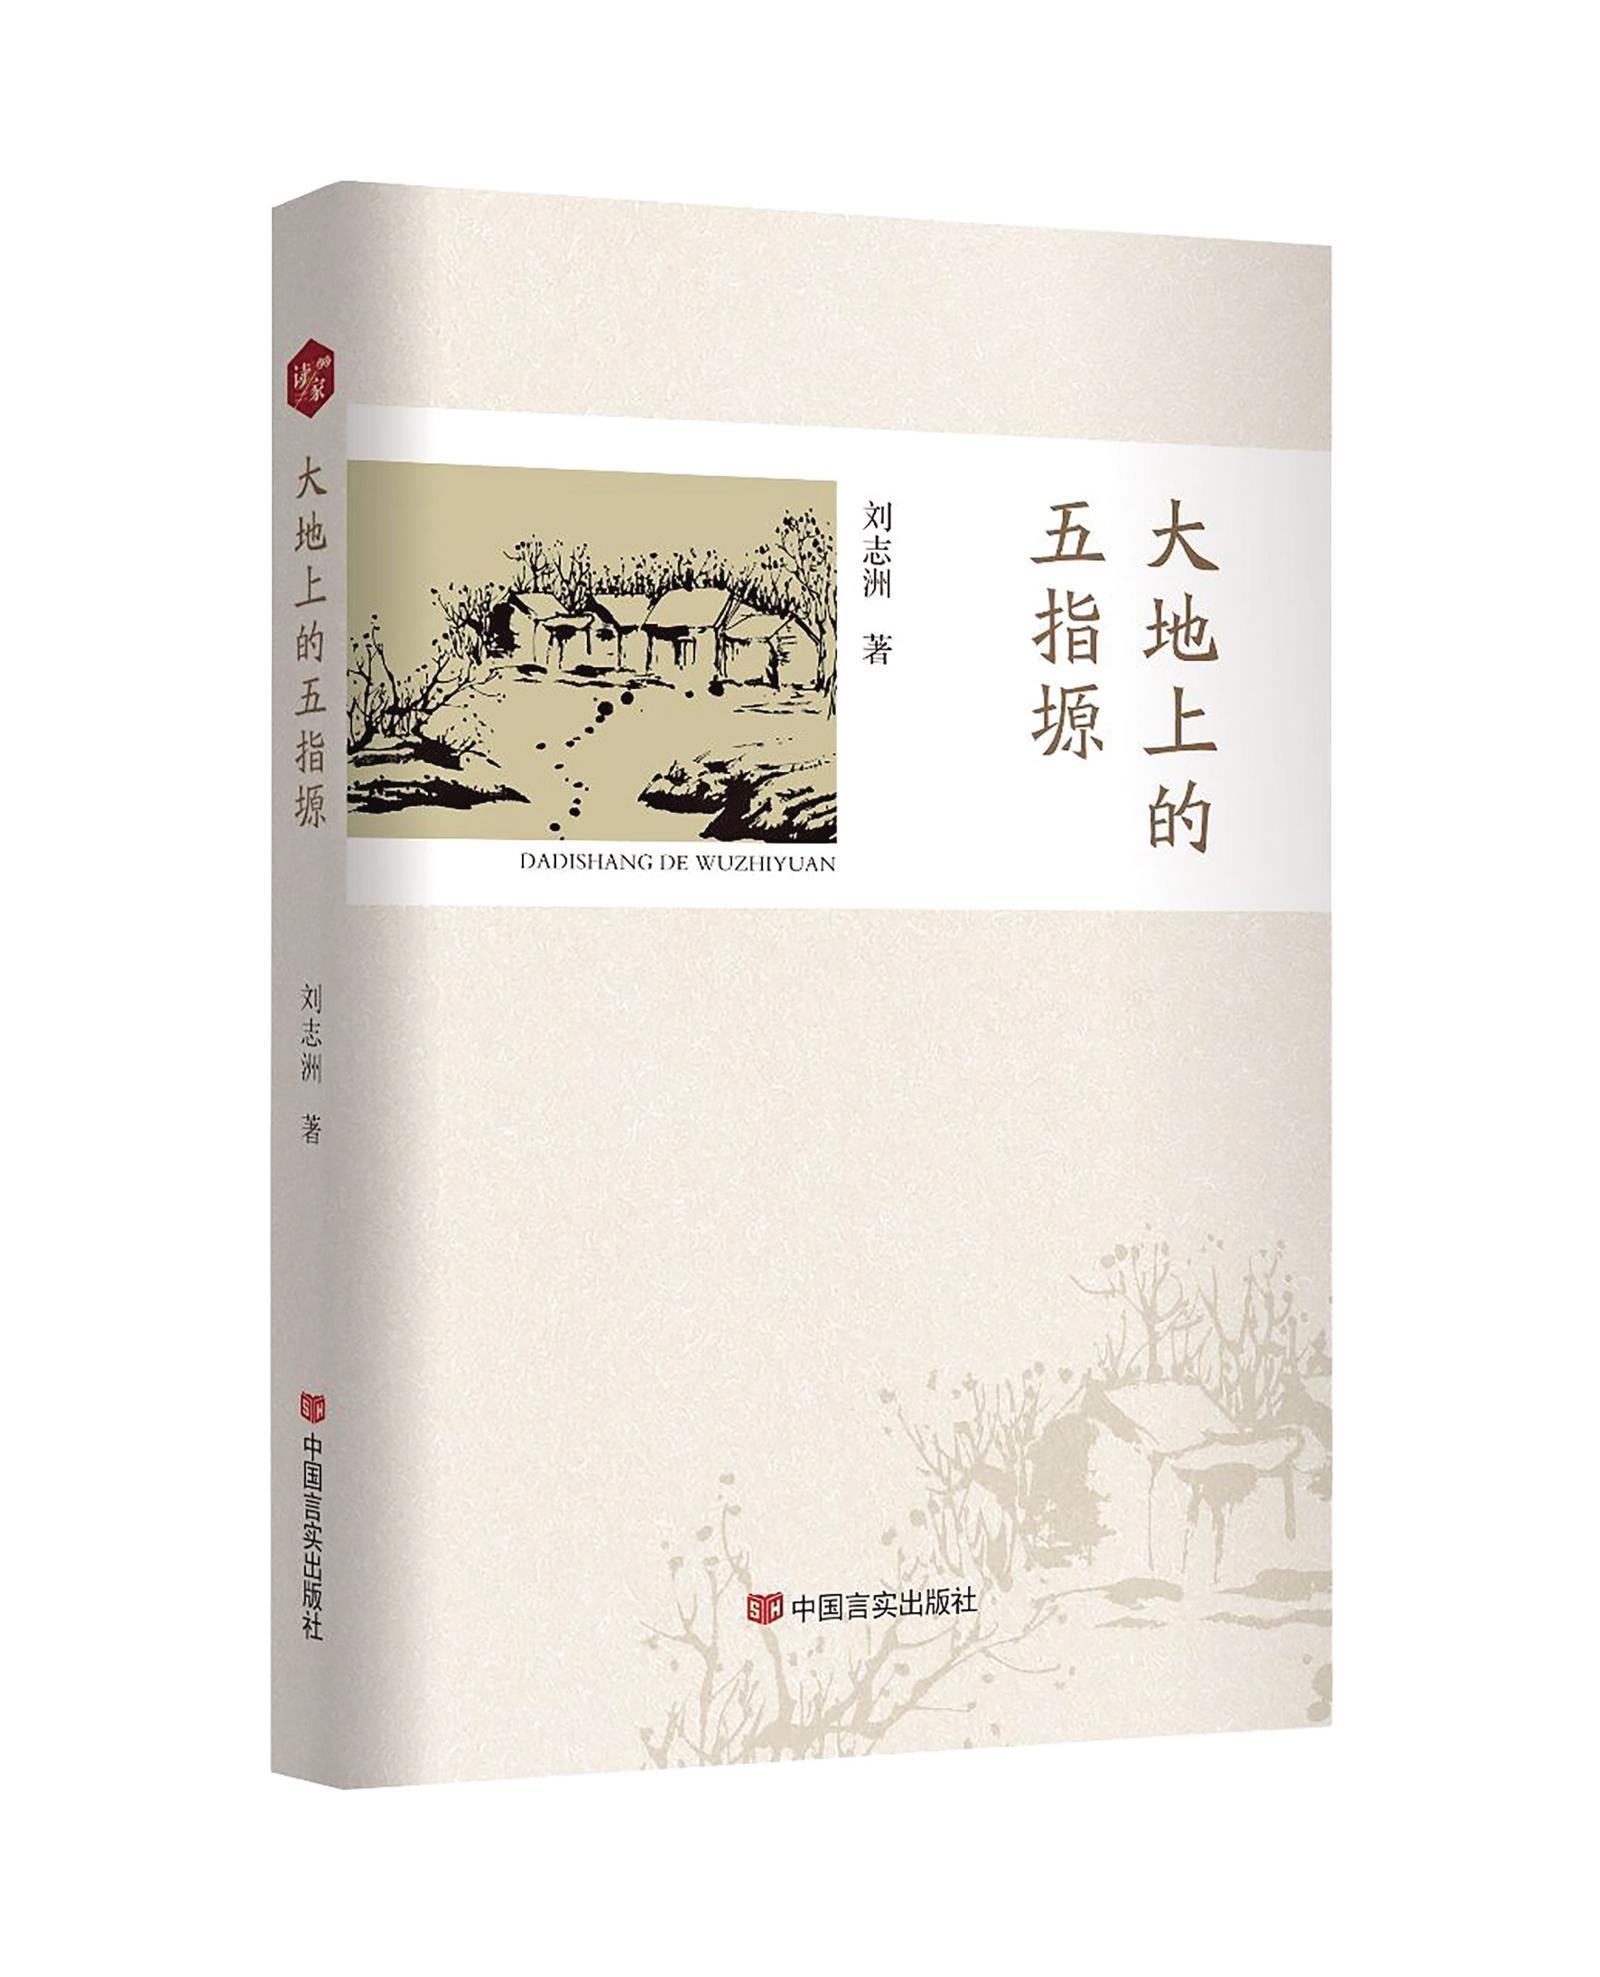 庆阳作家刘志洲散文集 《大地上的五指塬》出版发行